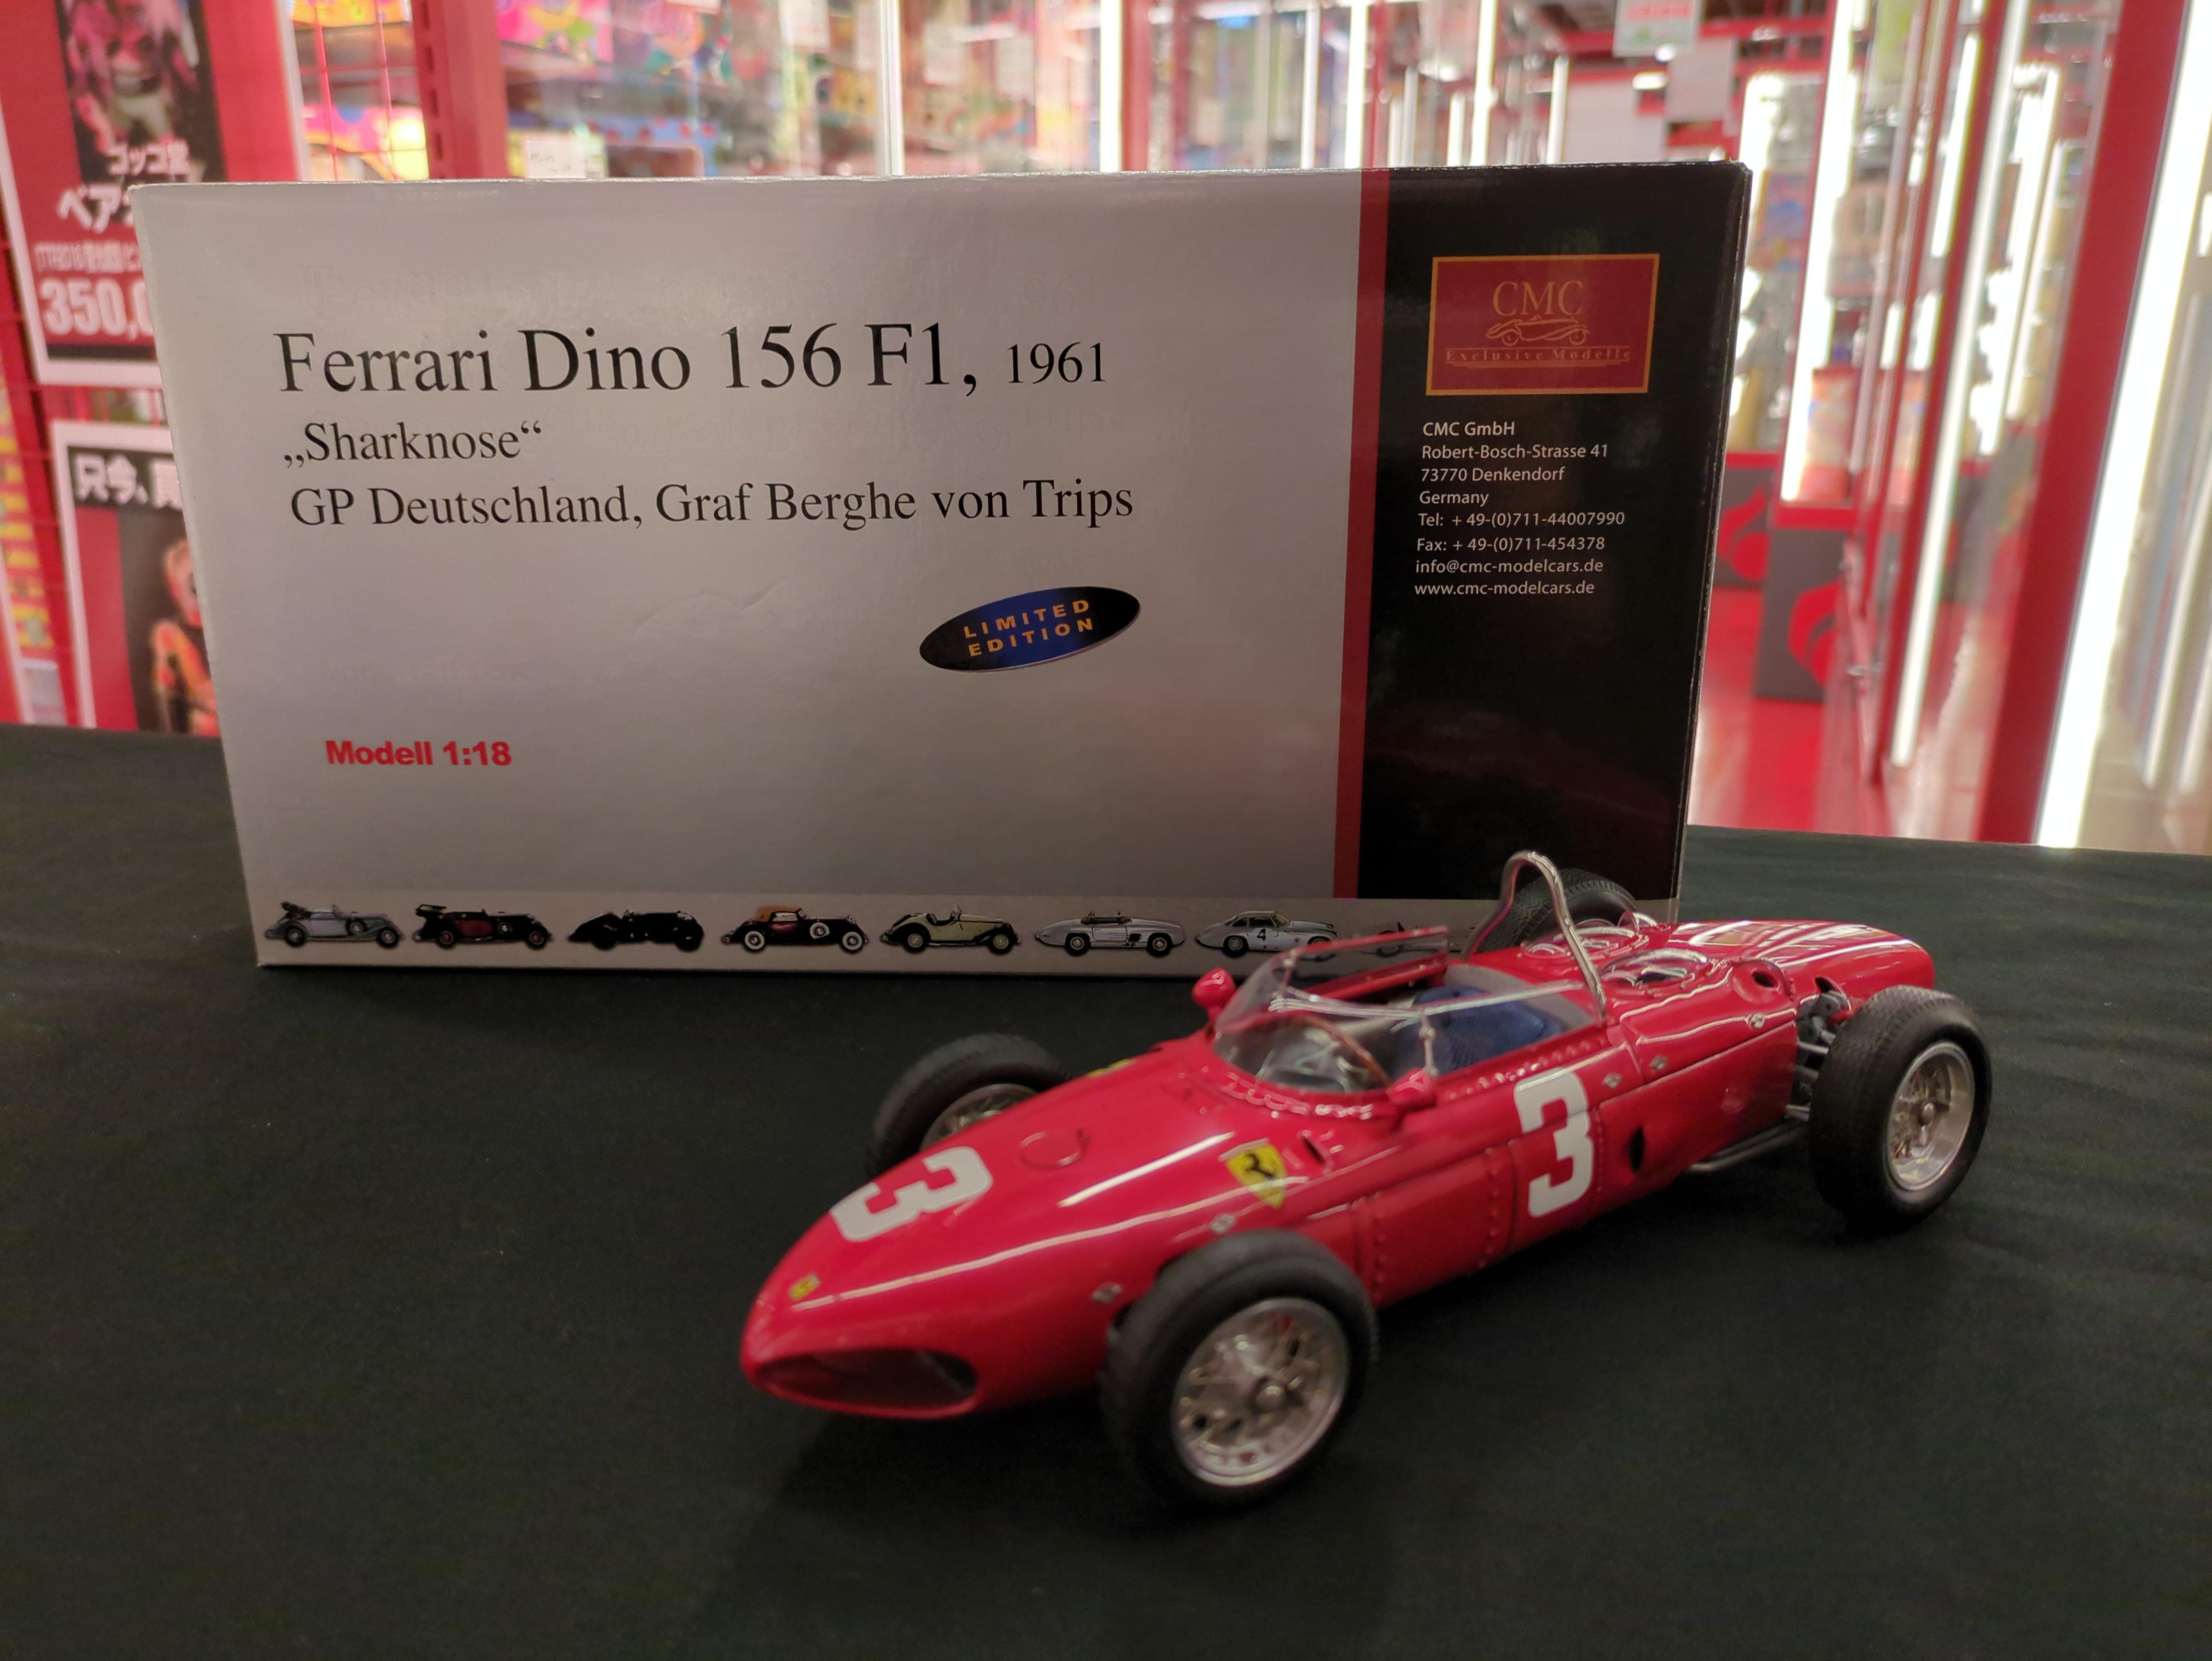 CMC Ferrari Dino 156 F-1 1961 Sharknose #3 GP Deutschland M-069.jpg